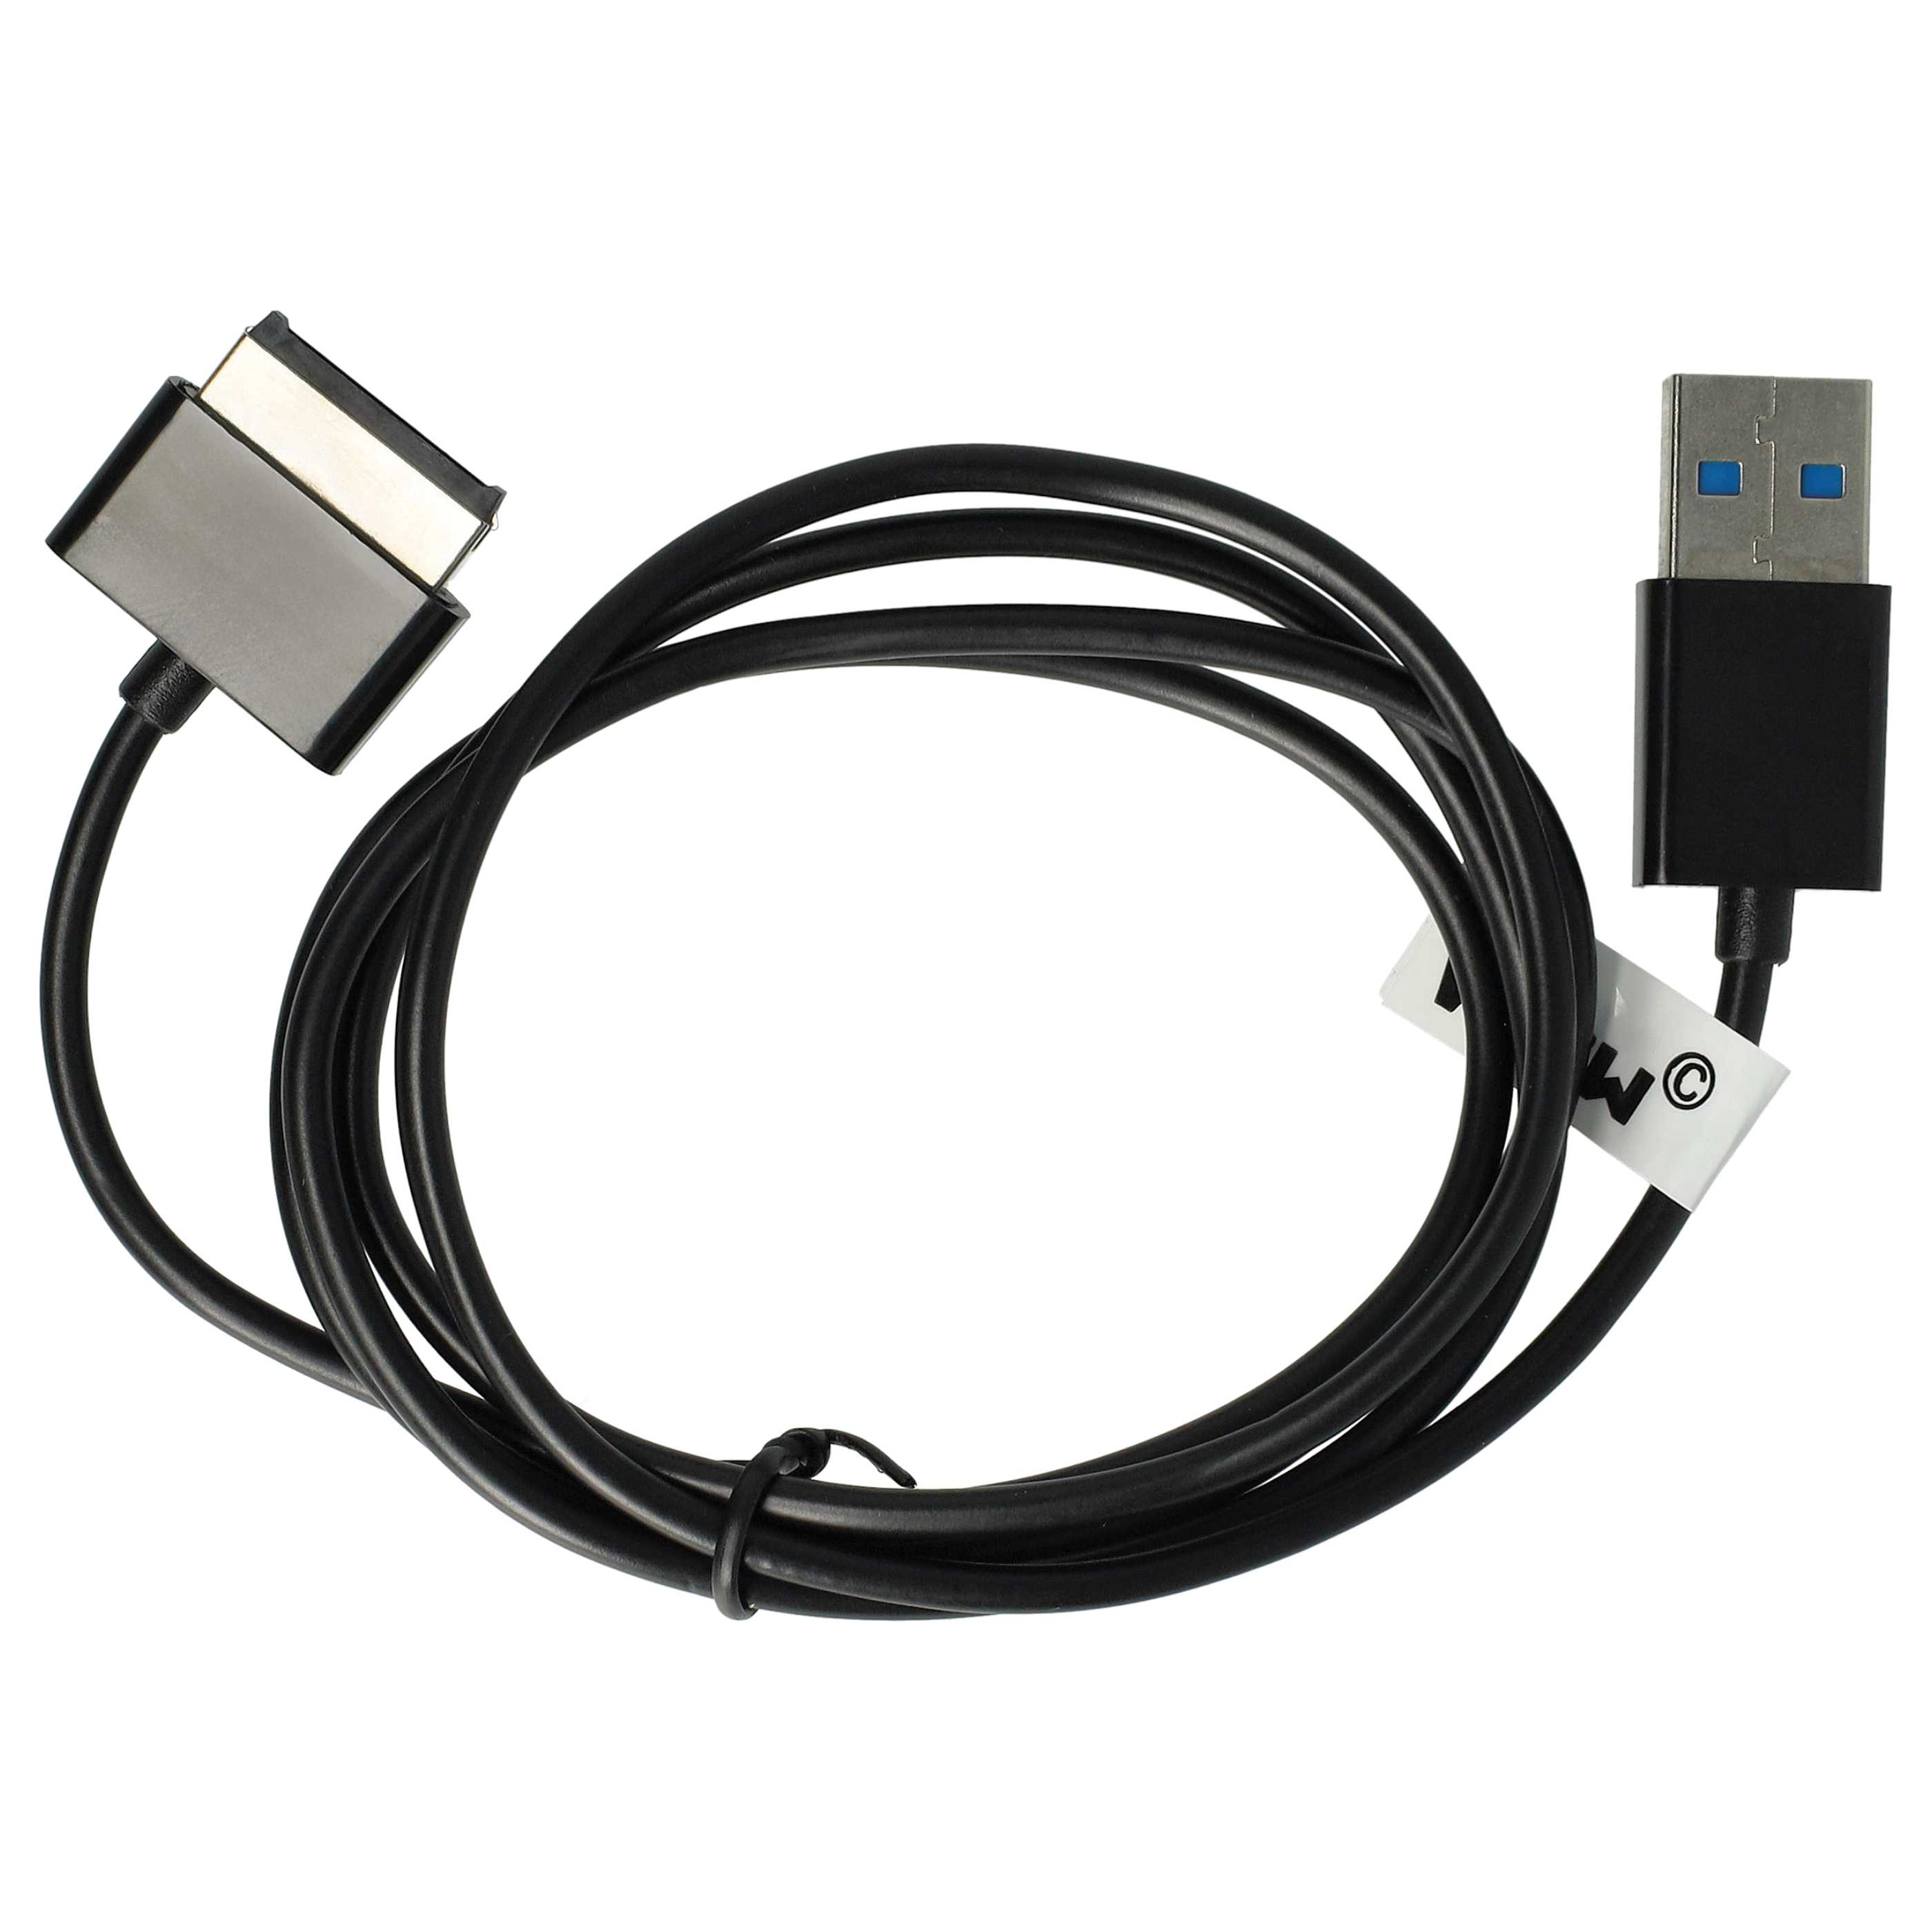 Cavo dati USB per tablet Asus Eee Pad Transformer SL101 - cavo di alimentazione 2in1